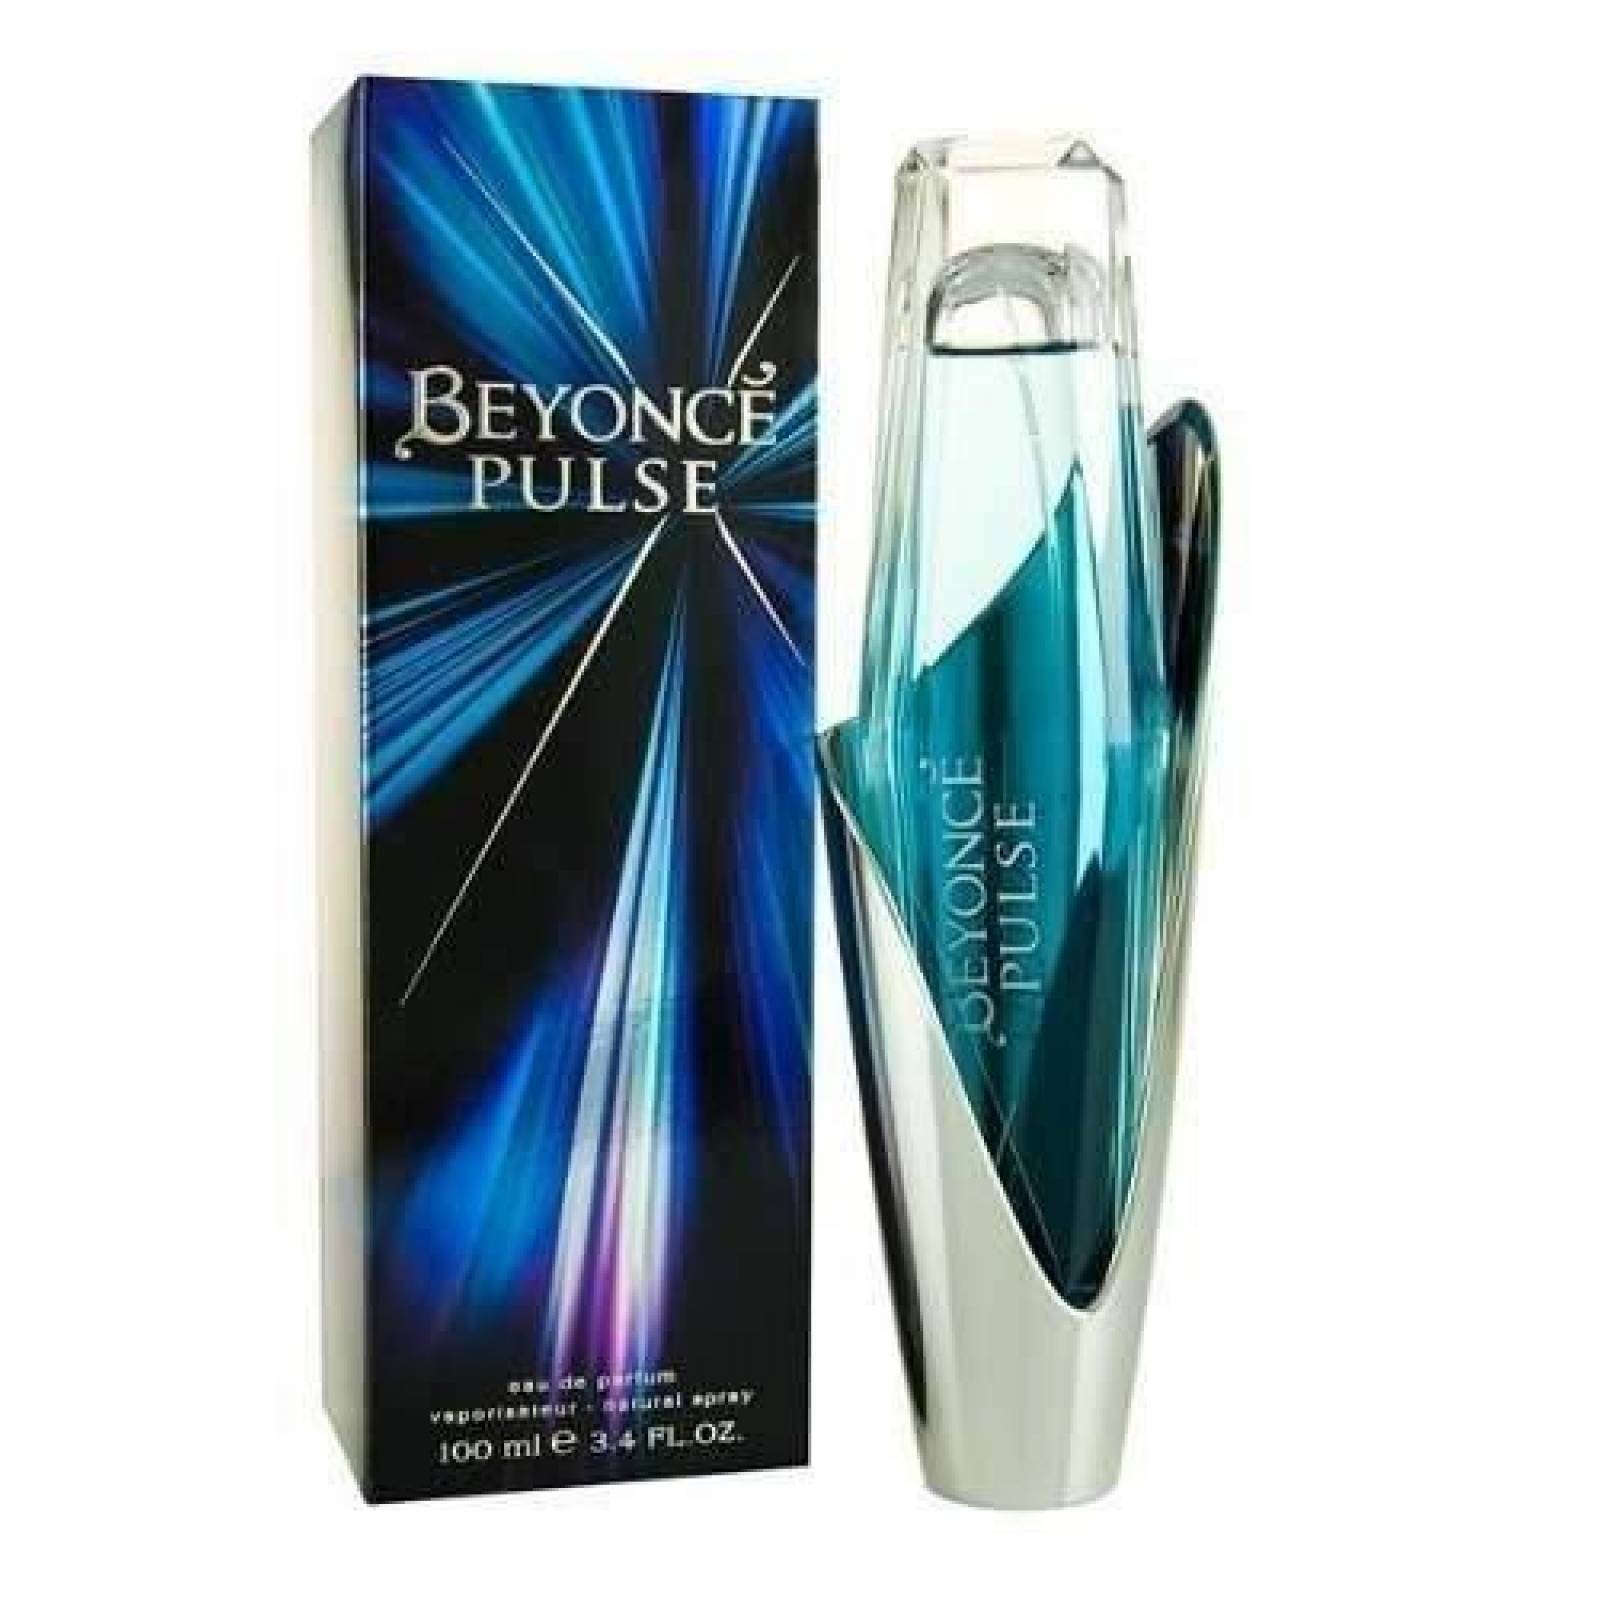 Beyonce Pulse Dama Perfume 100 Ml Edp Spray - Original